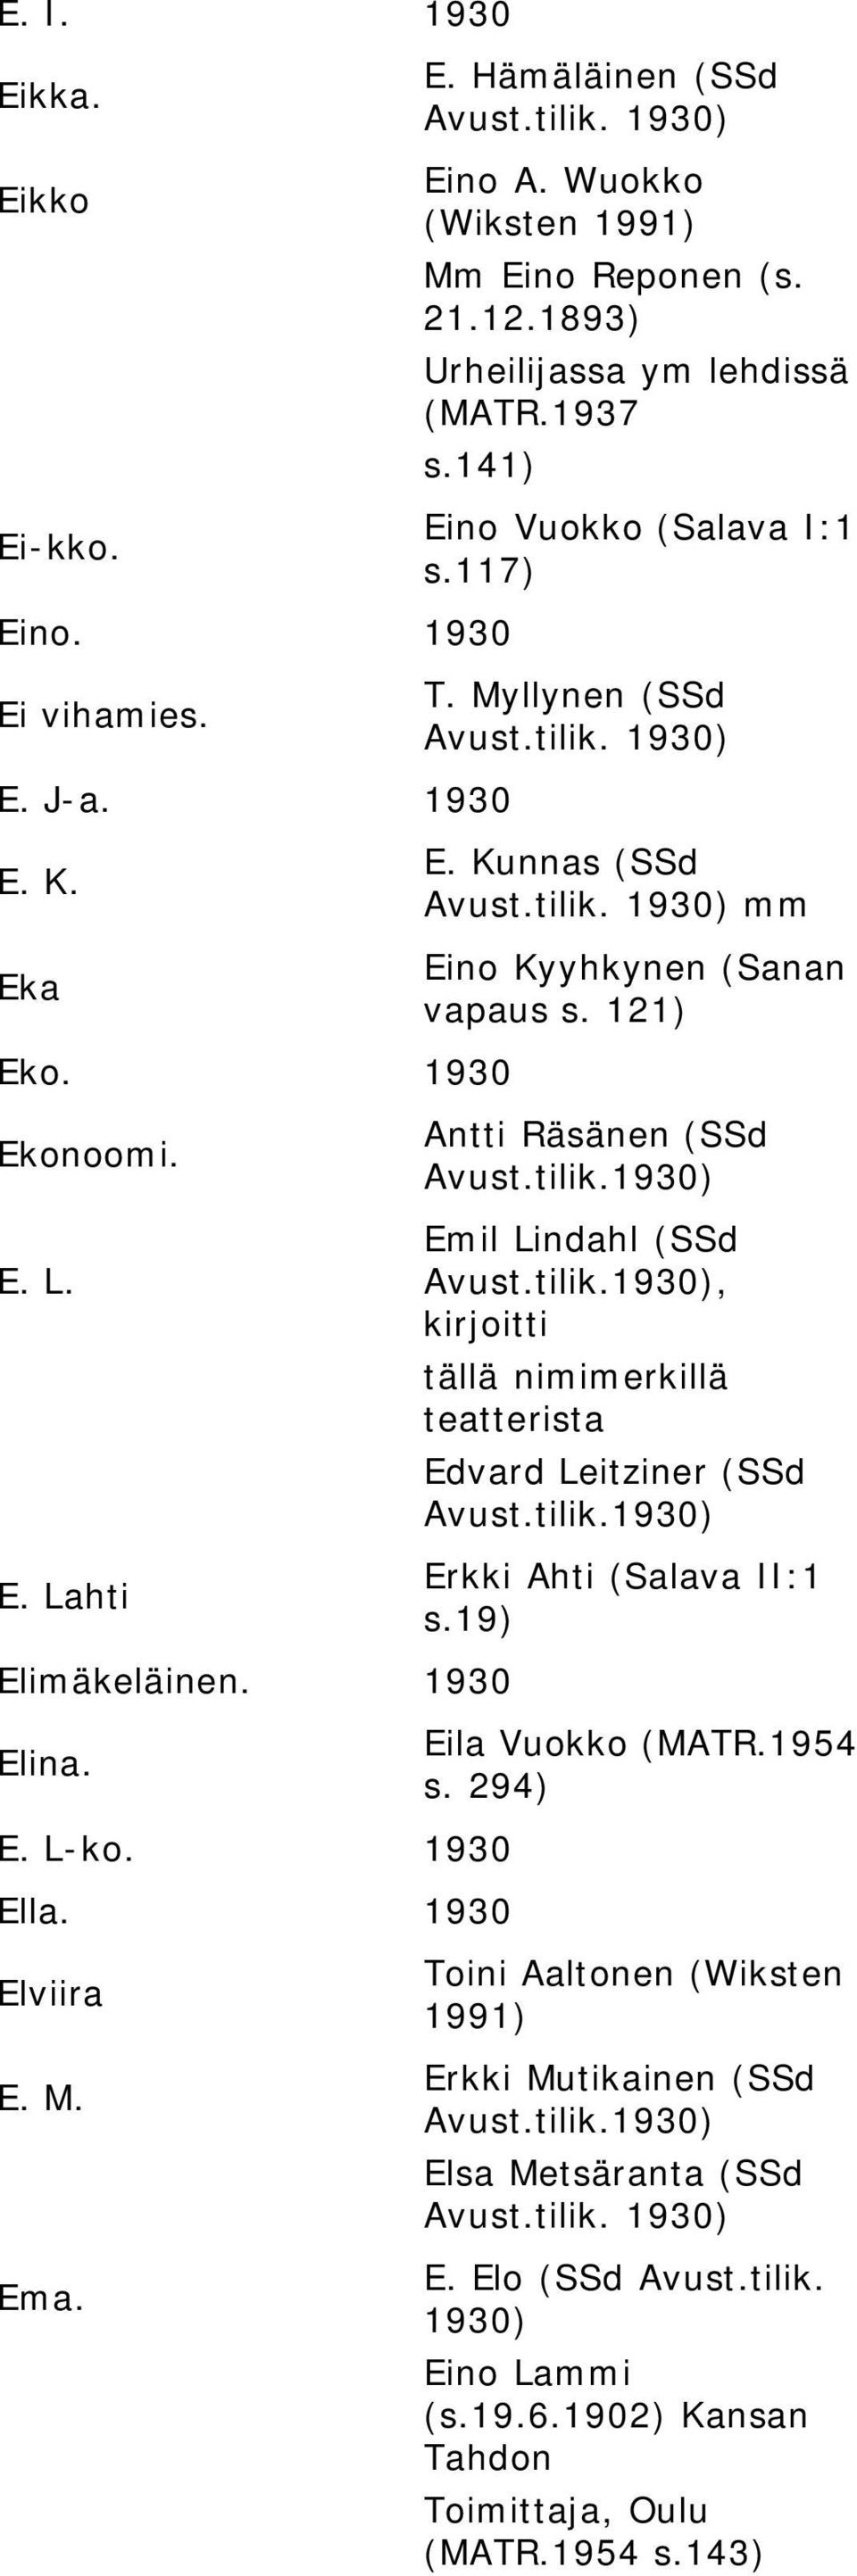 Kunnas (SSd mm Eino Kyyhkynen (Sanan vapaus s. 121) Antti Räsänen (SSd Emil Lindahl (SSd, kirjoitti tällä nimimerkillä teatterista Edvard Leitziner (SSd Erkki Ahti (Salava II:1 s.